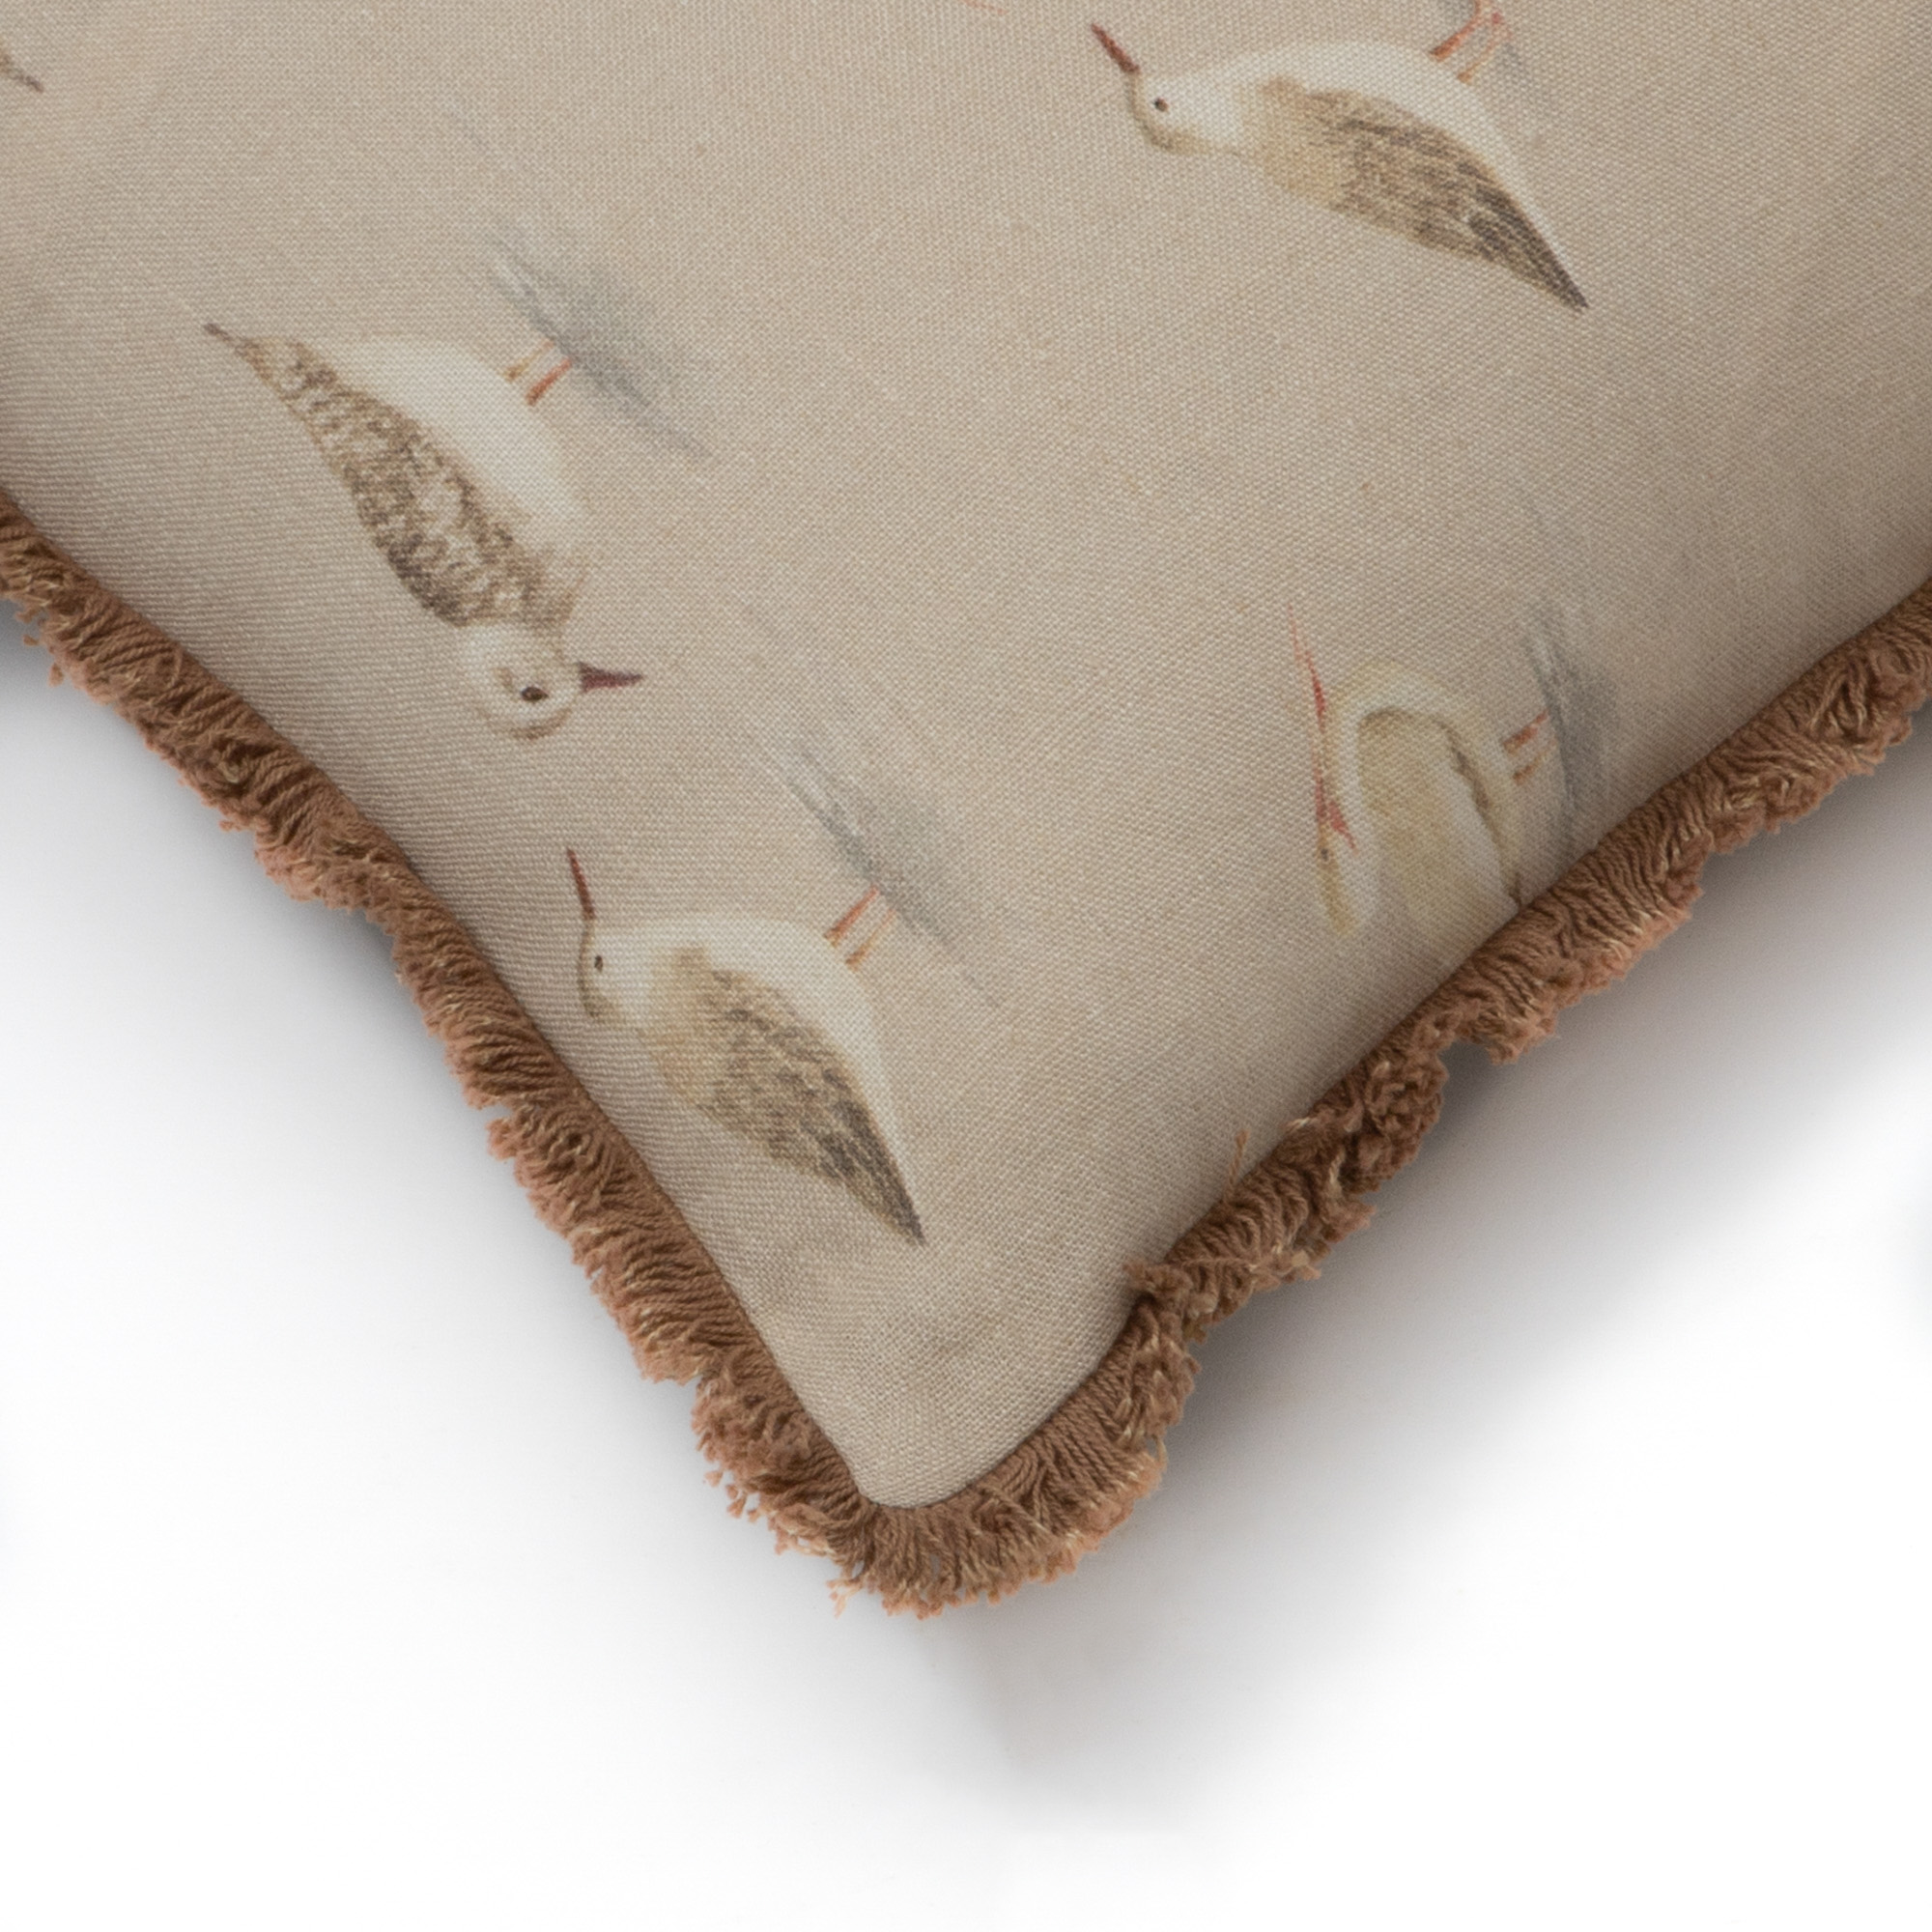 Curious Seagulls Cushion Cover